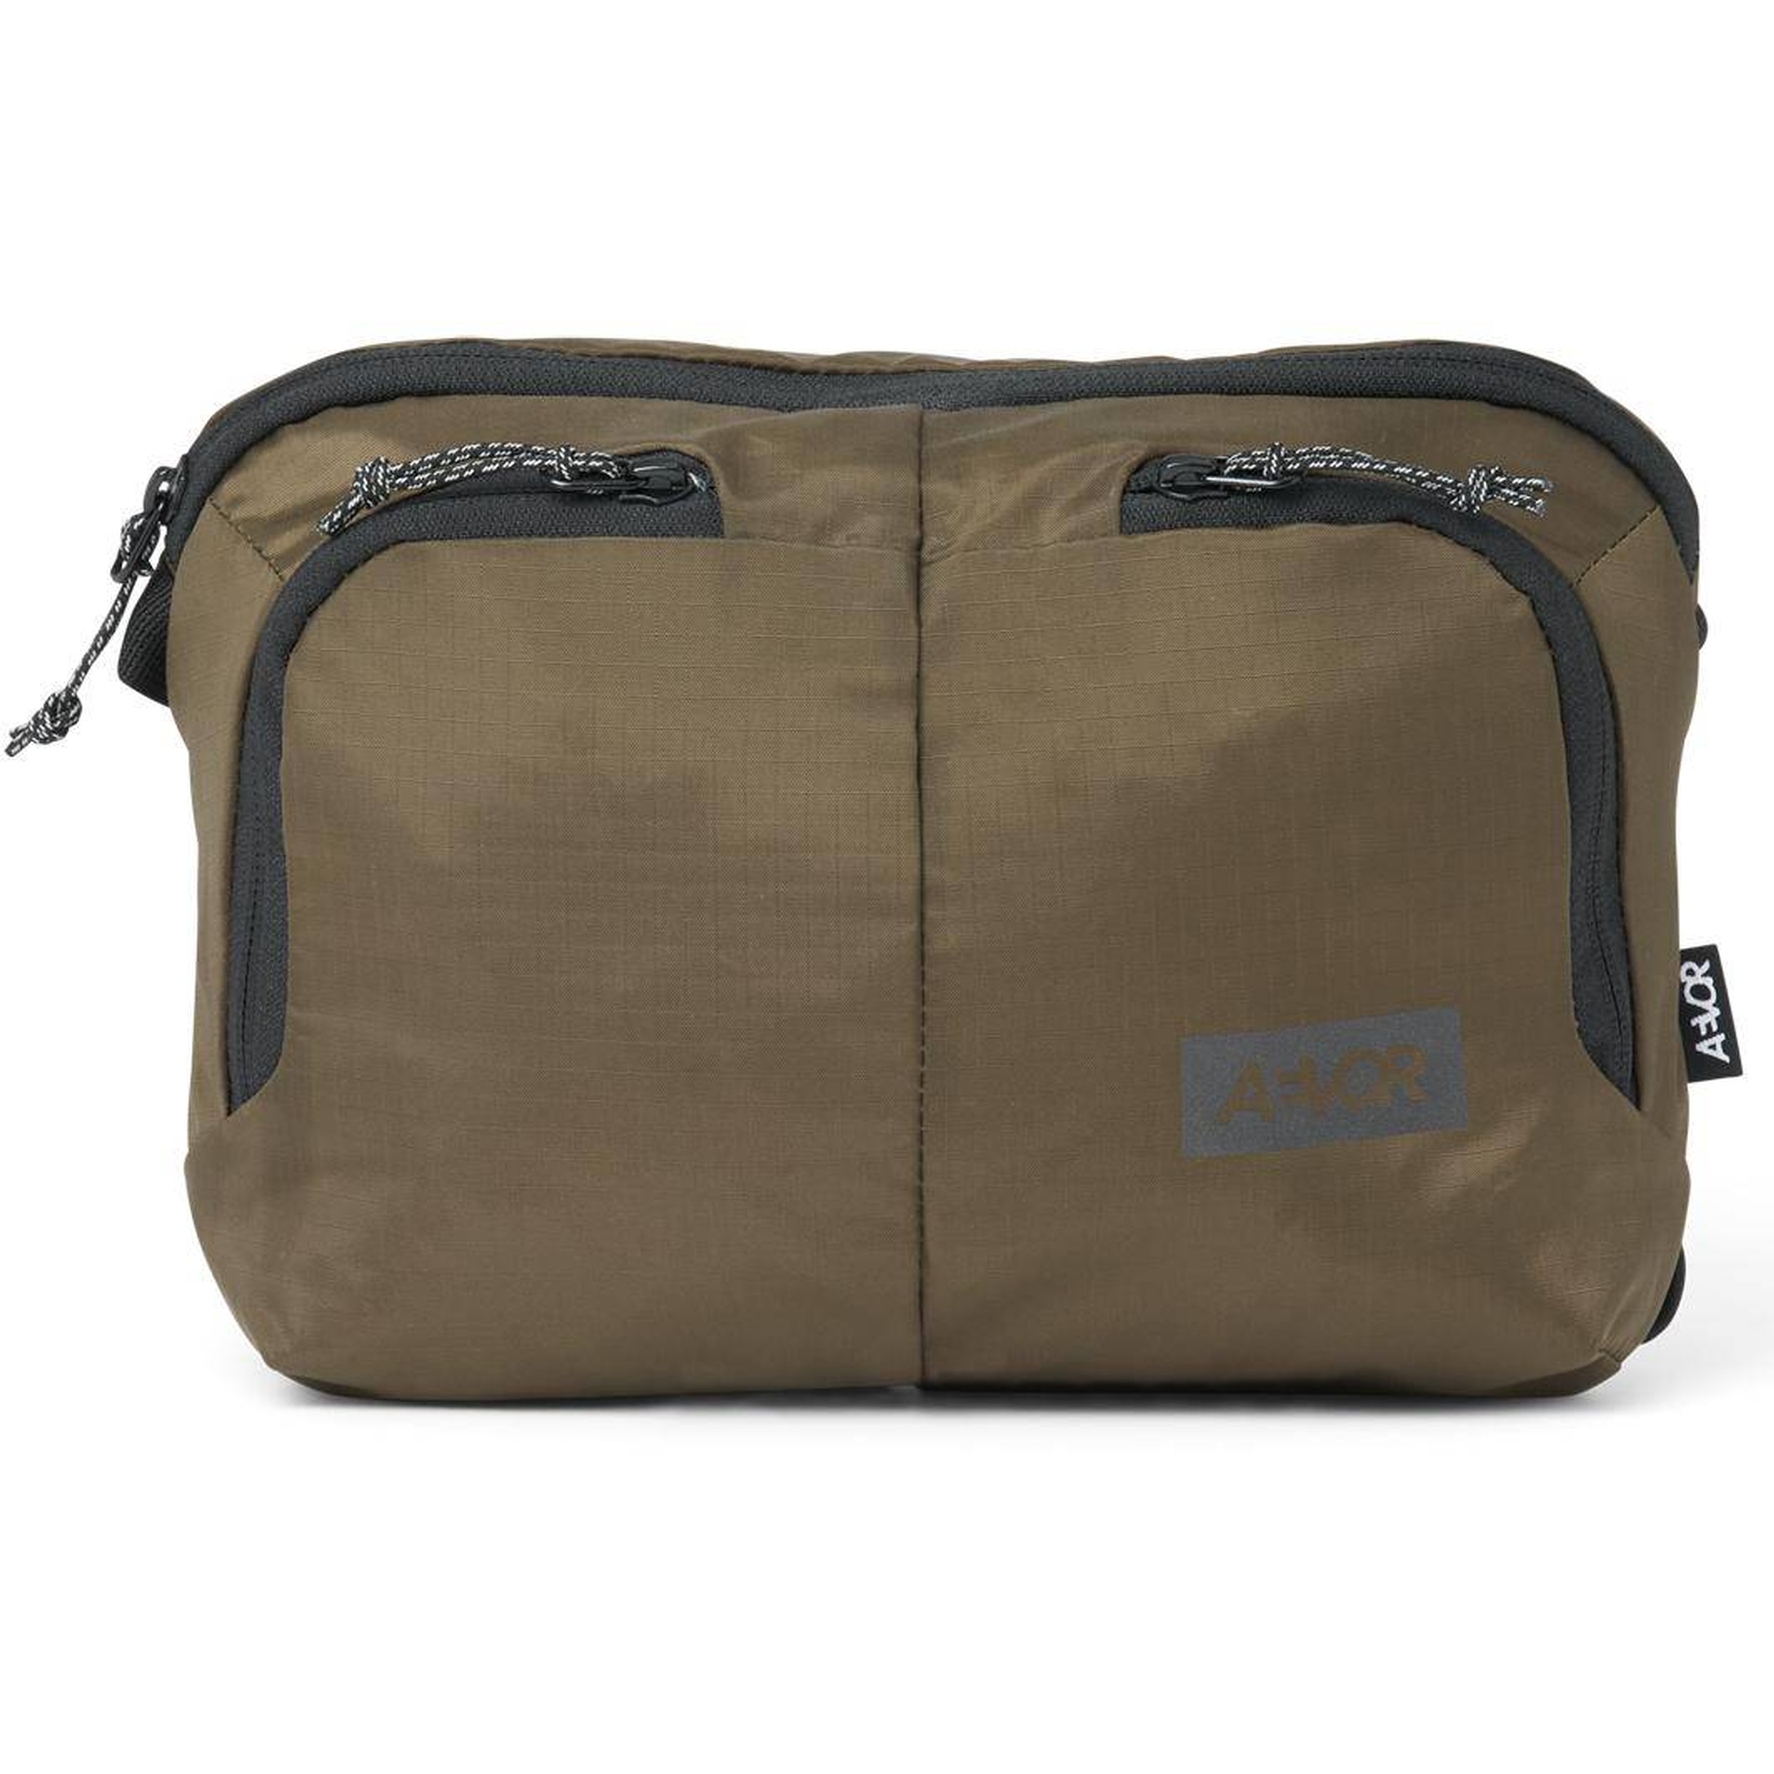 Productfoto van AEVOR Sacoche Bag 4L Schoudertas - Ripstop Olive Gold